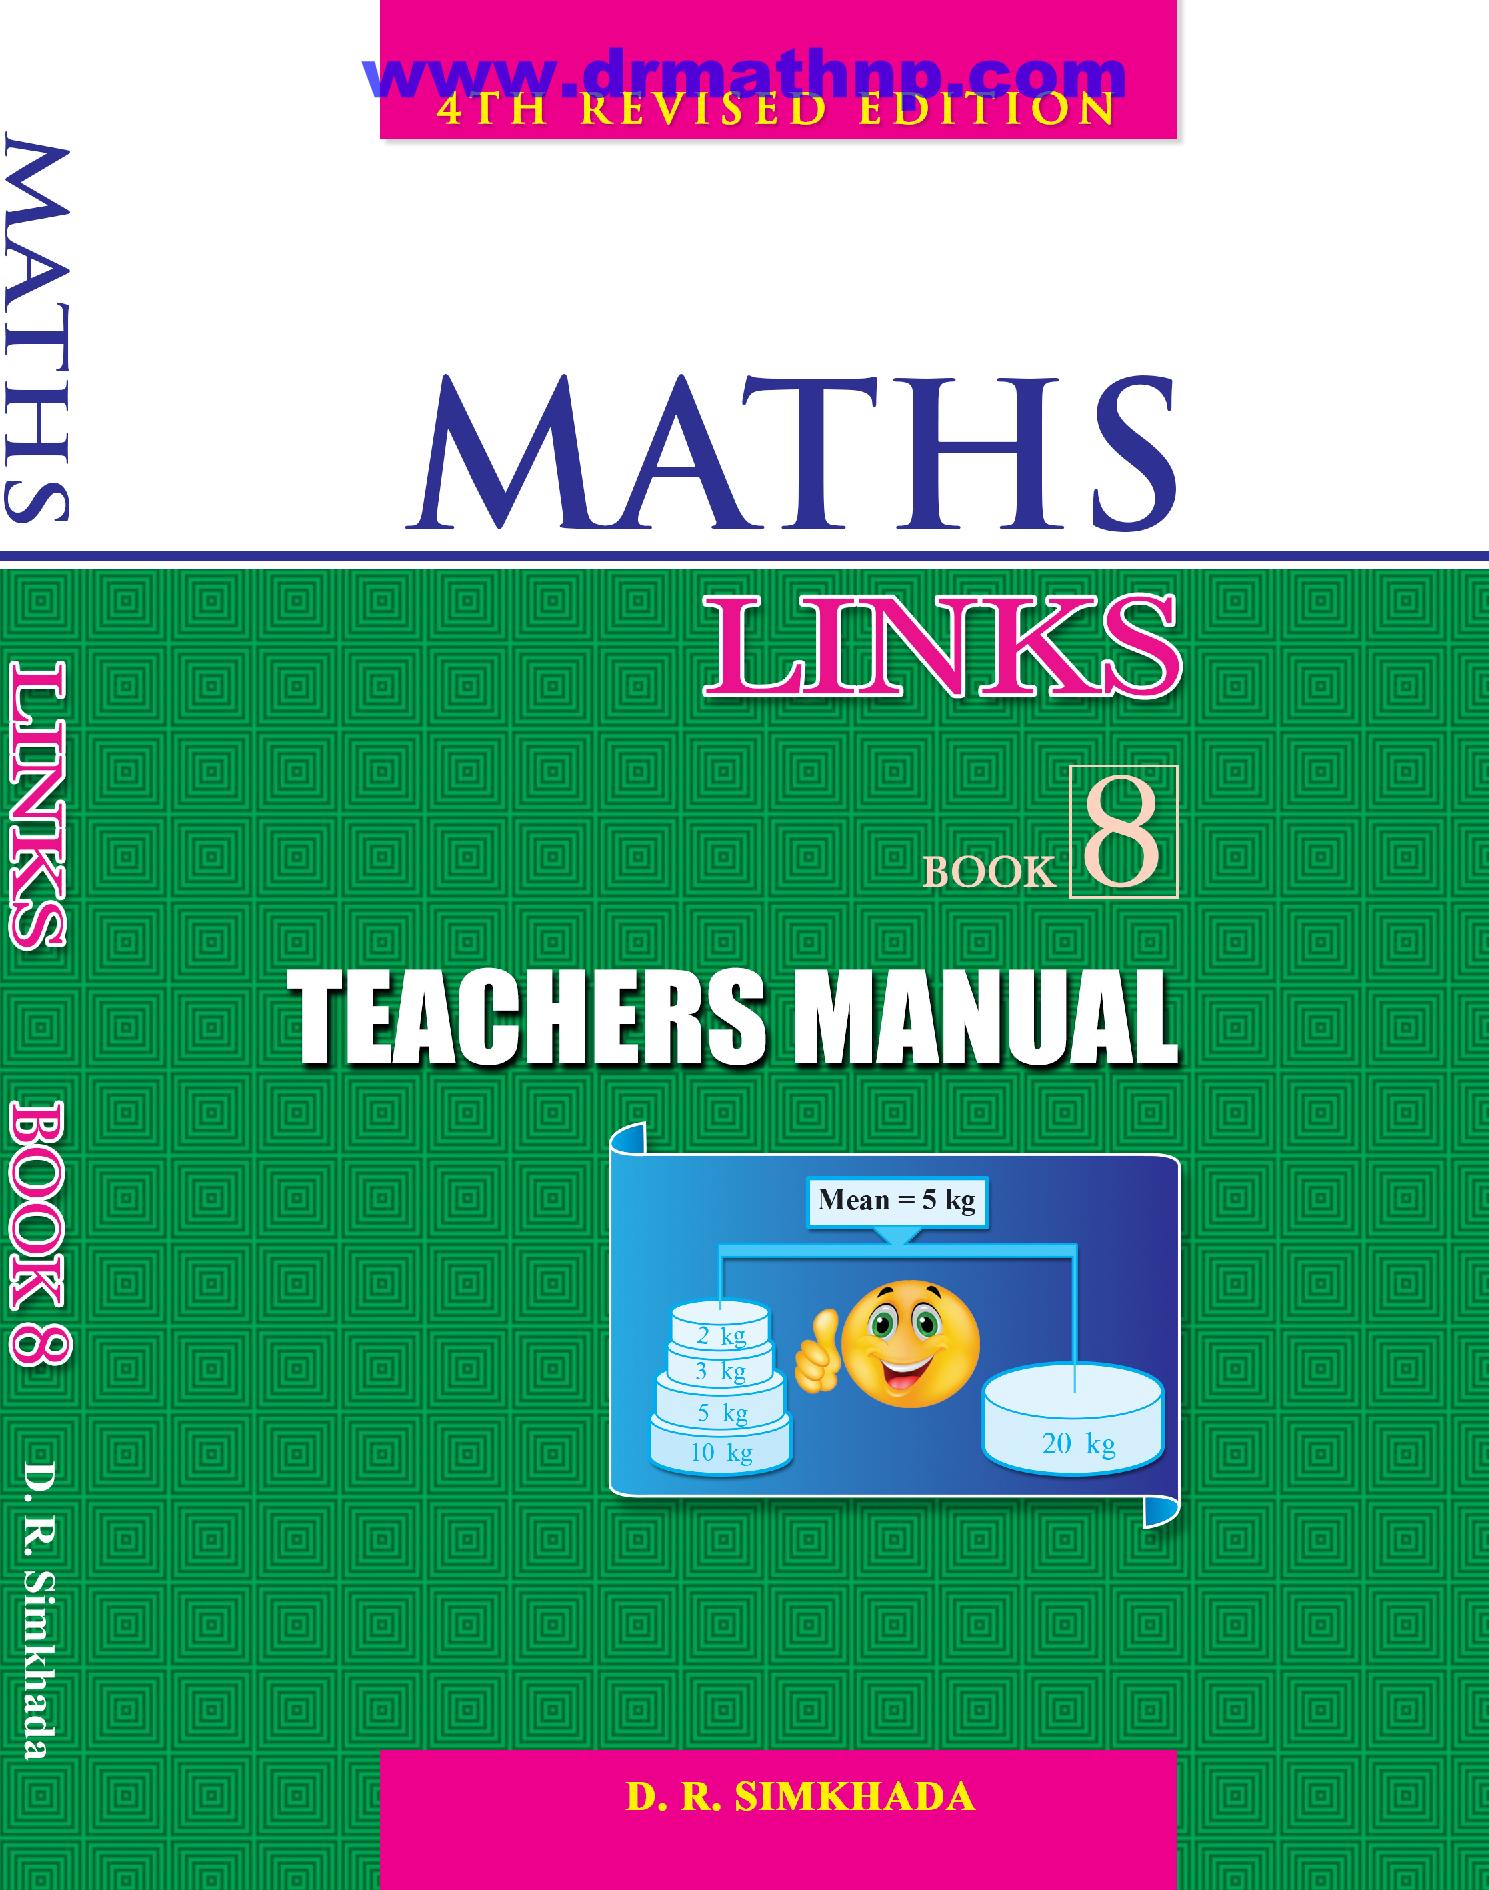 Teacher’s Manual Maths Links 8